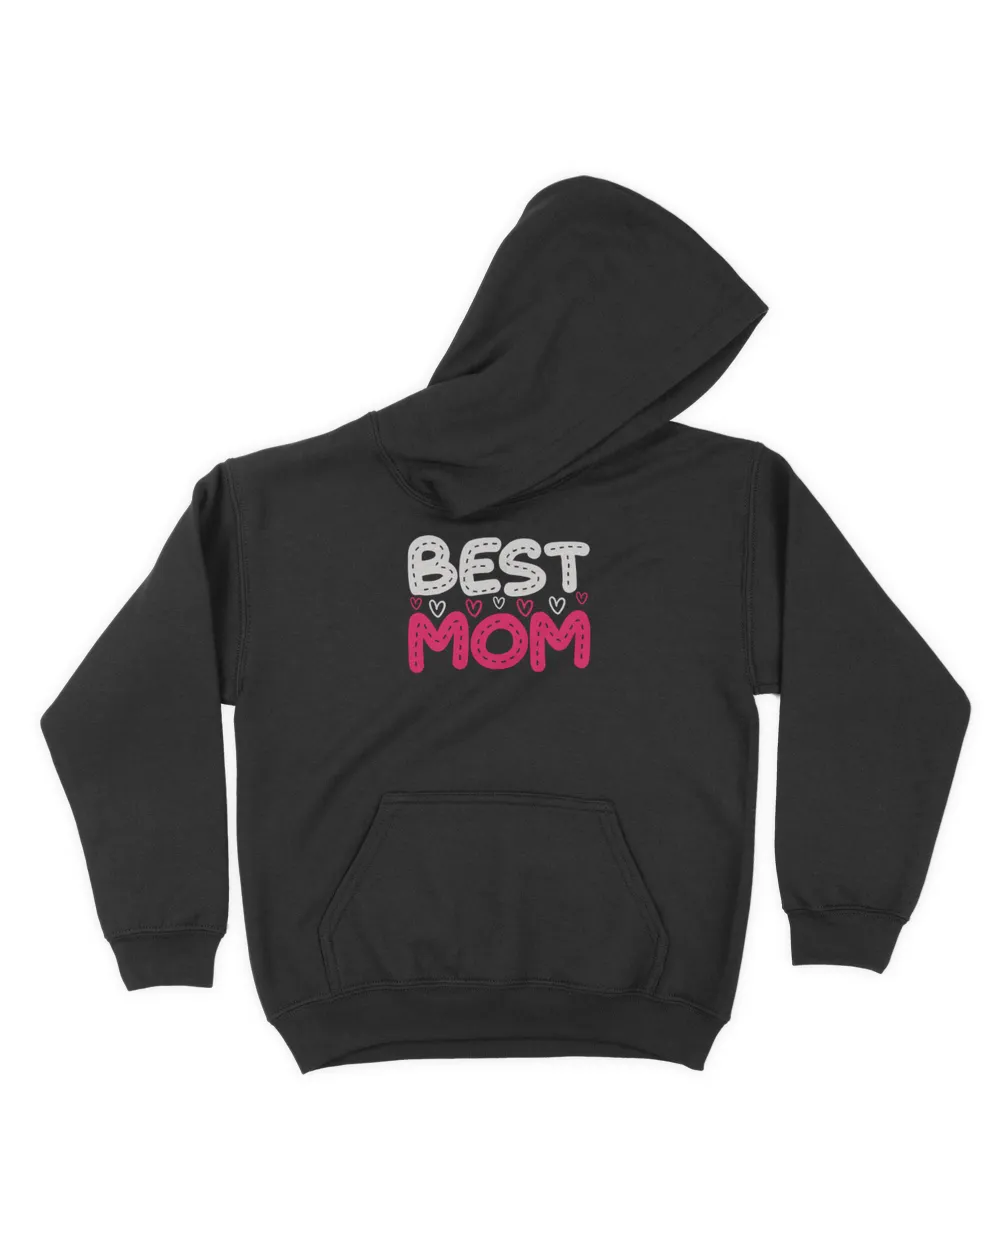 Best Mom t shirt